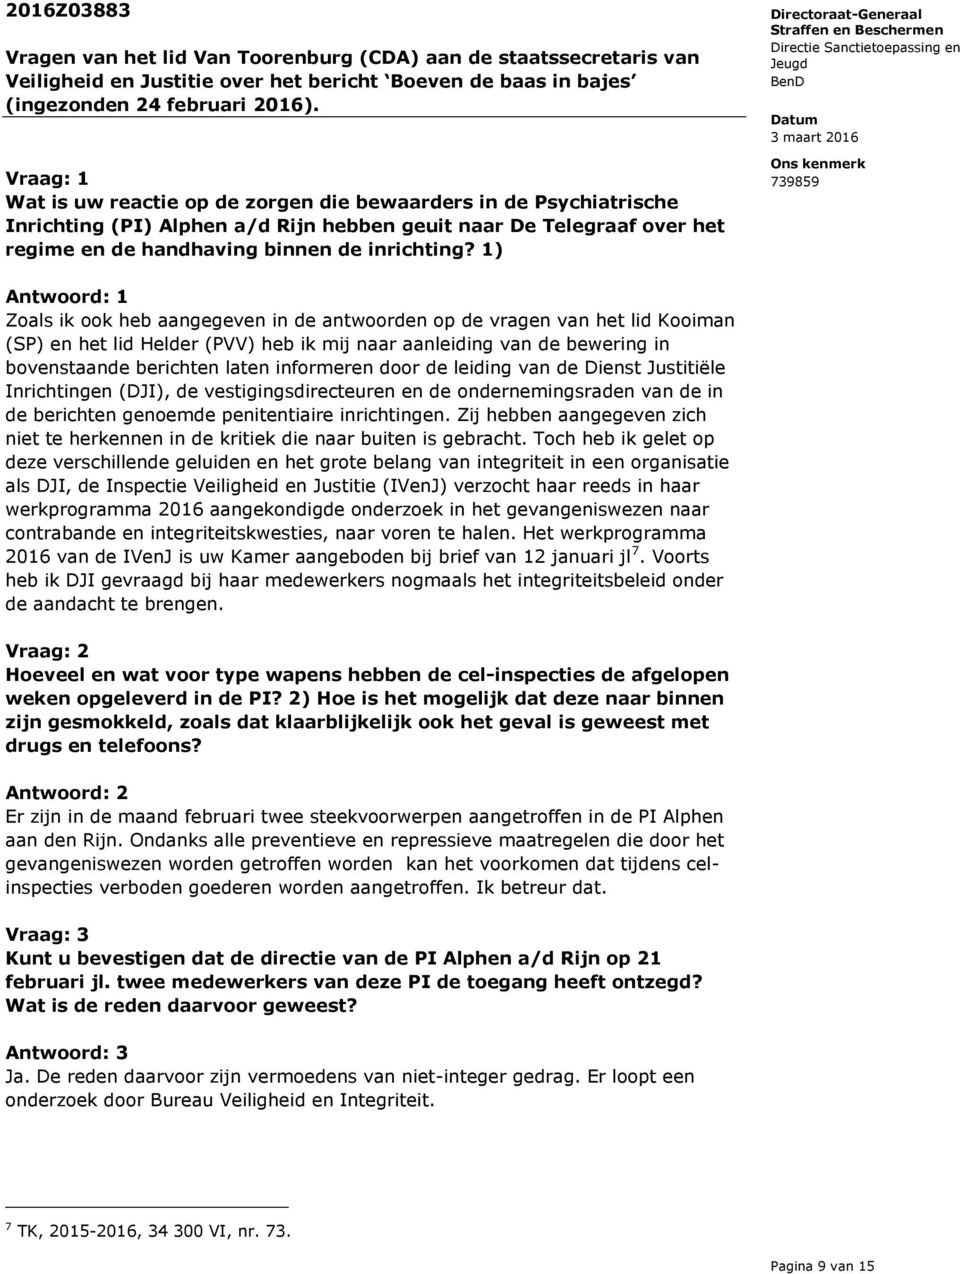 1) Antwoord: 1 Zoals ik ook heb aangegeven in de antwoorden op de vragen van het lid Kooiman (SP) en het lid Helder (PVV) heb ik mij naar aanleiding van de bewering in bovenstaande berichten laten